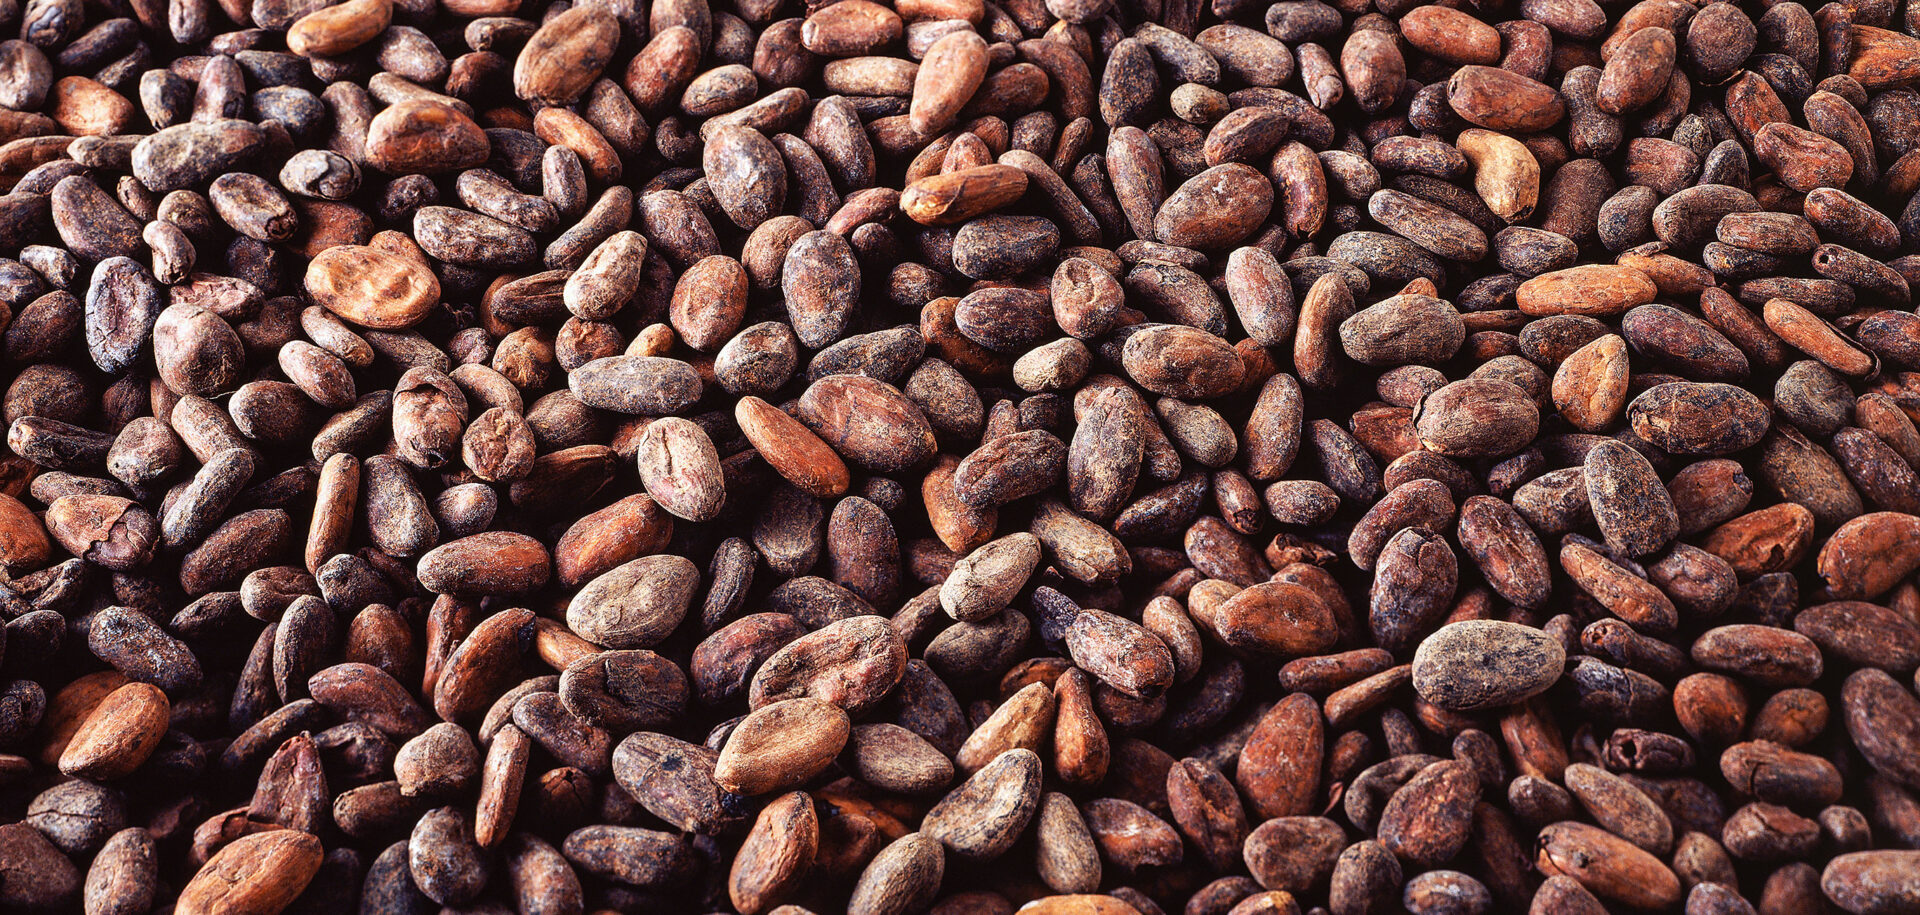 Cargill производит различную продукцию из какао и шоколада.